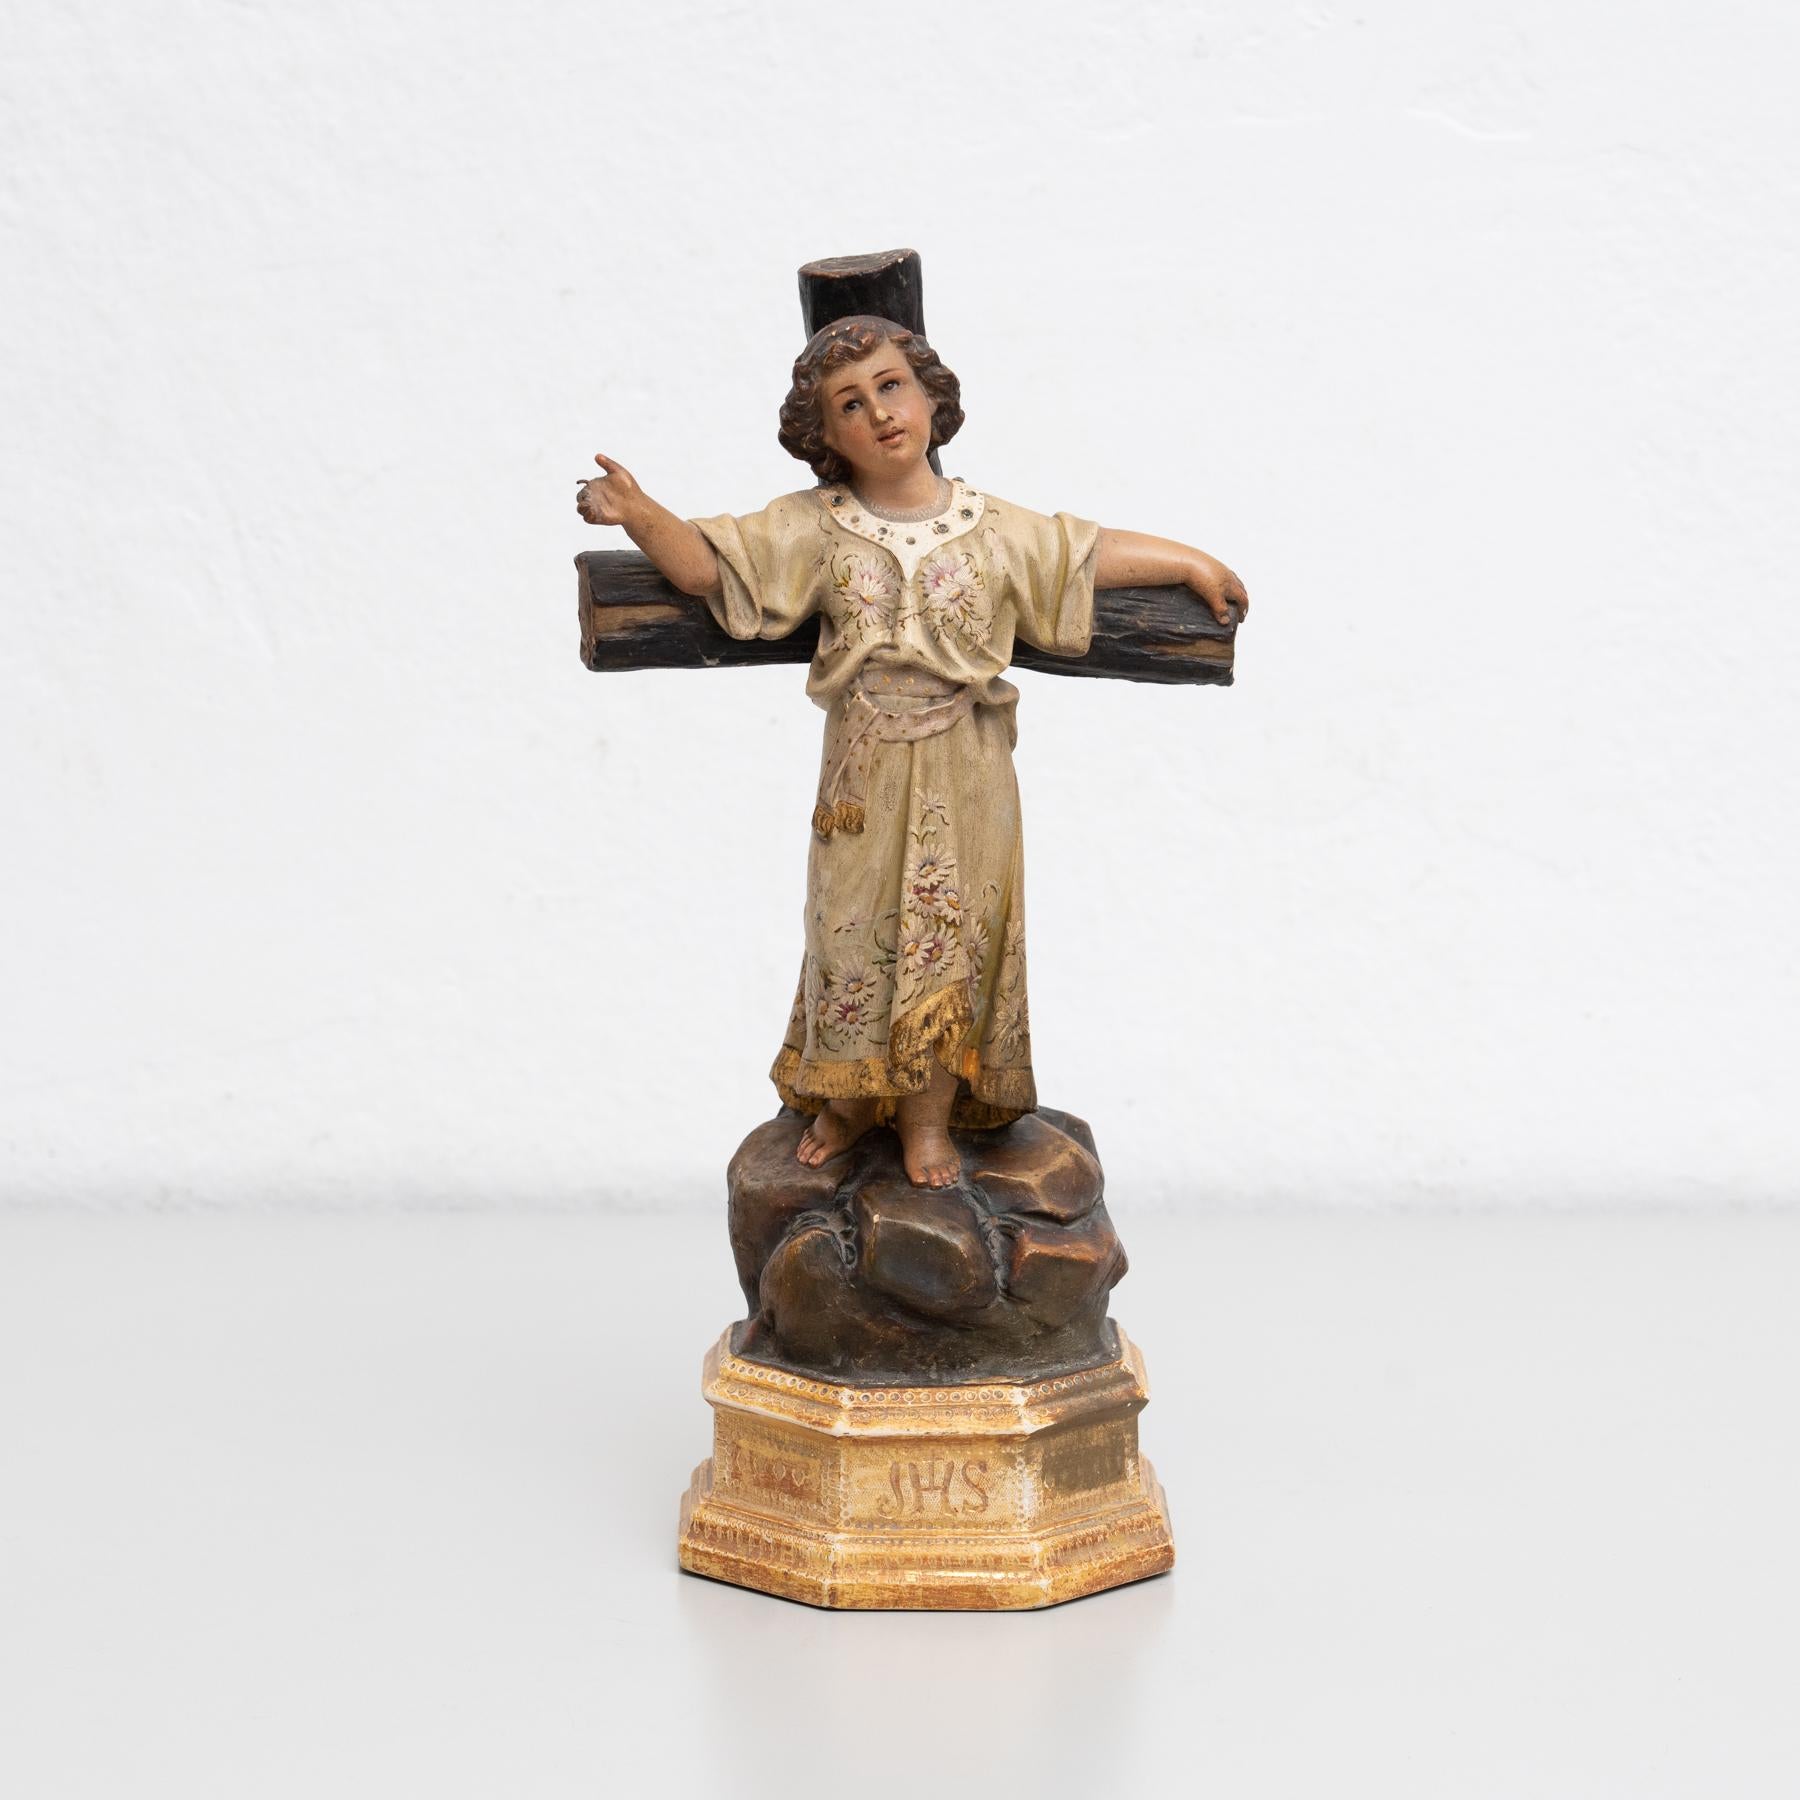 Figure religieuse traditionnelle en plâtre d'un enfant Jésus.

Fabriqué dans un atelier catalan traditionnel à Olot, en Espagne, vers 1930.

En état d'origine, avec une usure mineure conforme à l'âge et à l'utilisation, préservant une belle